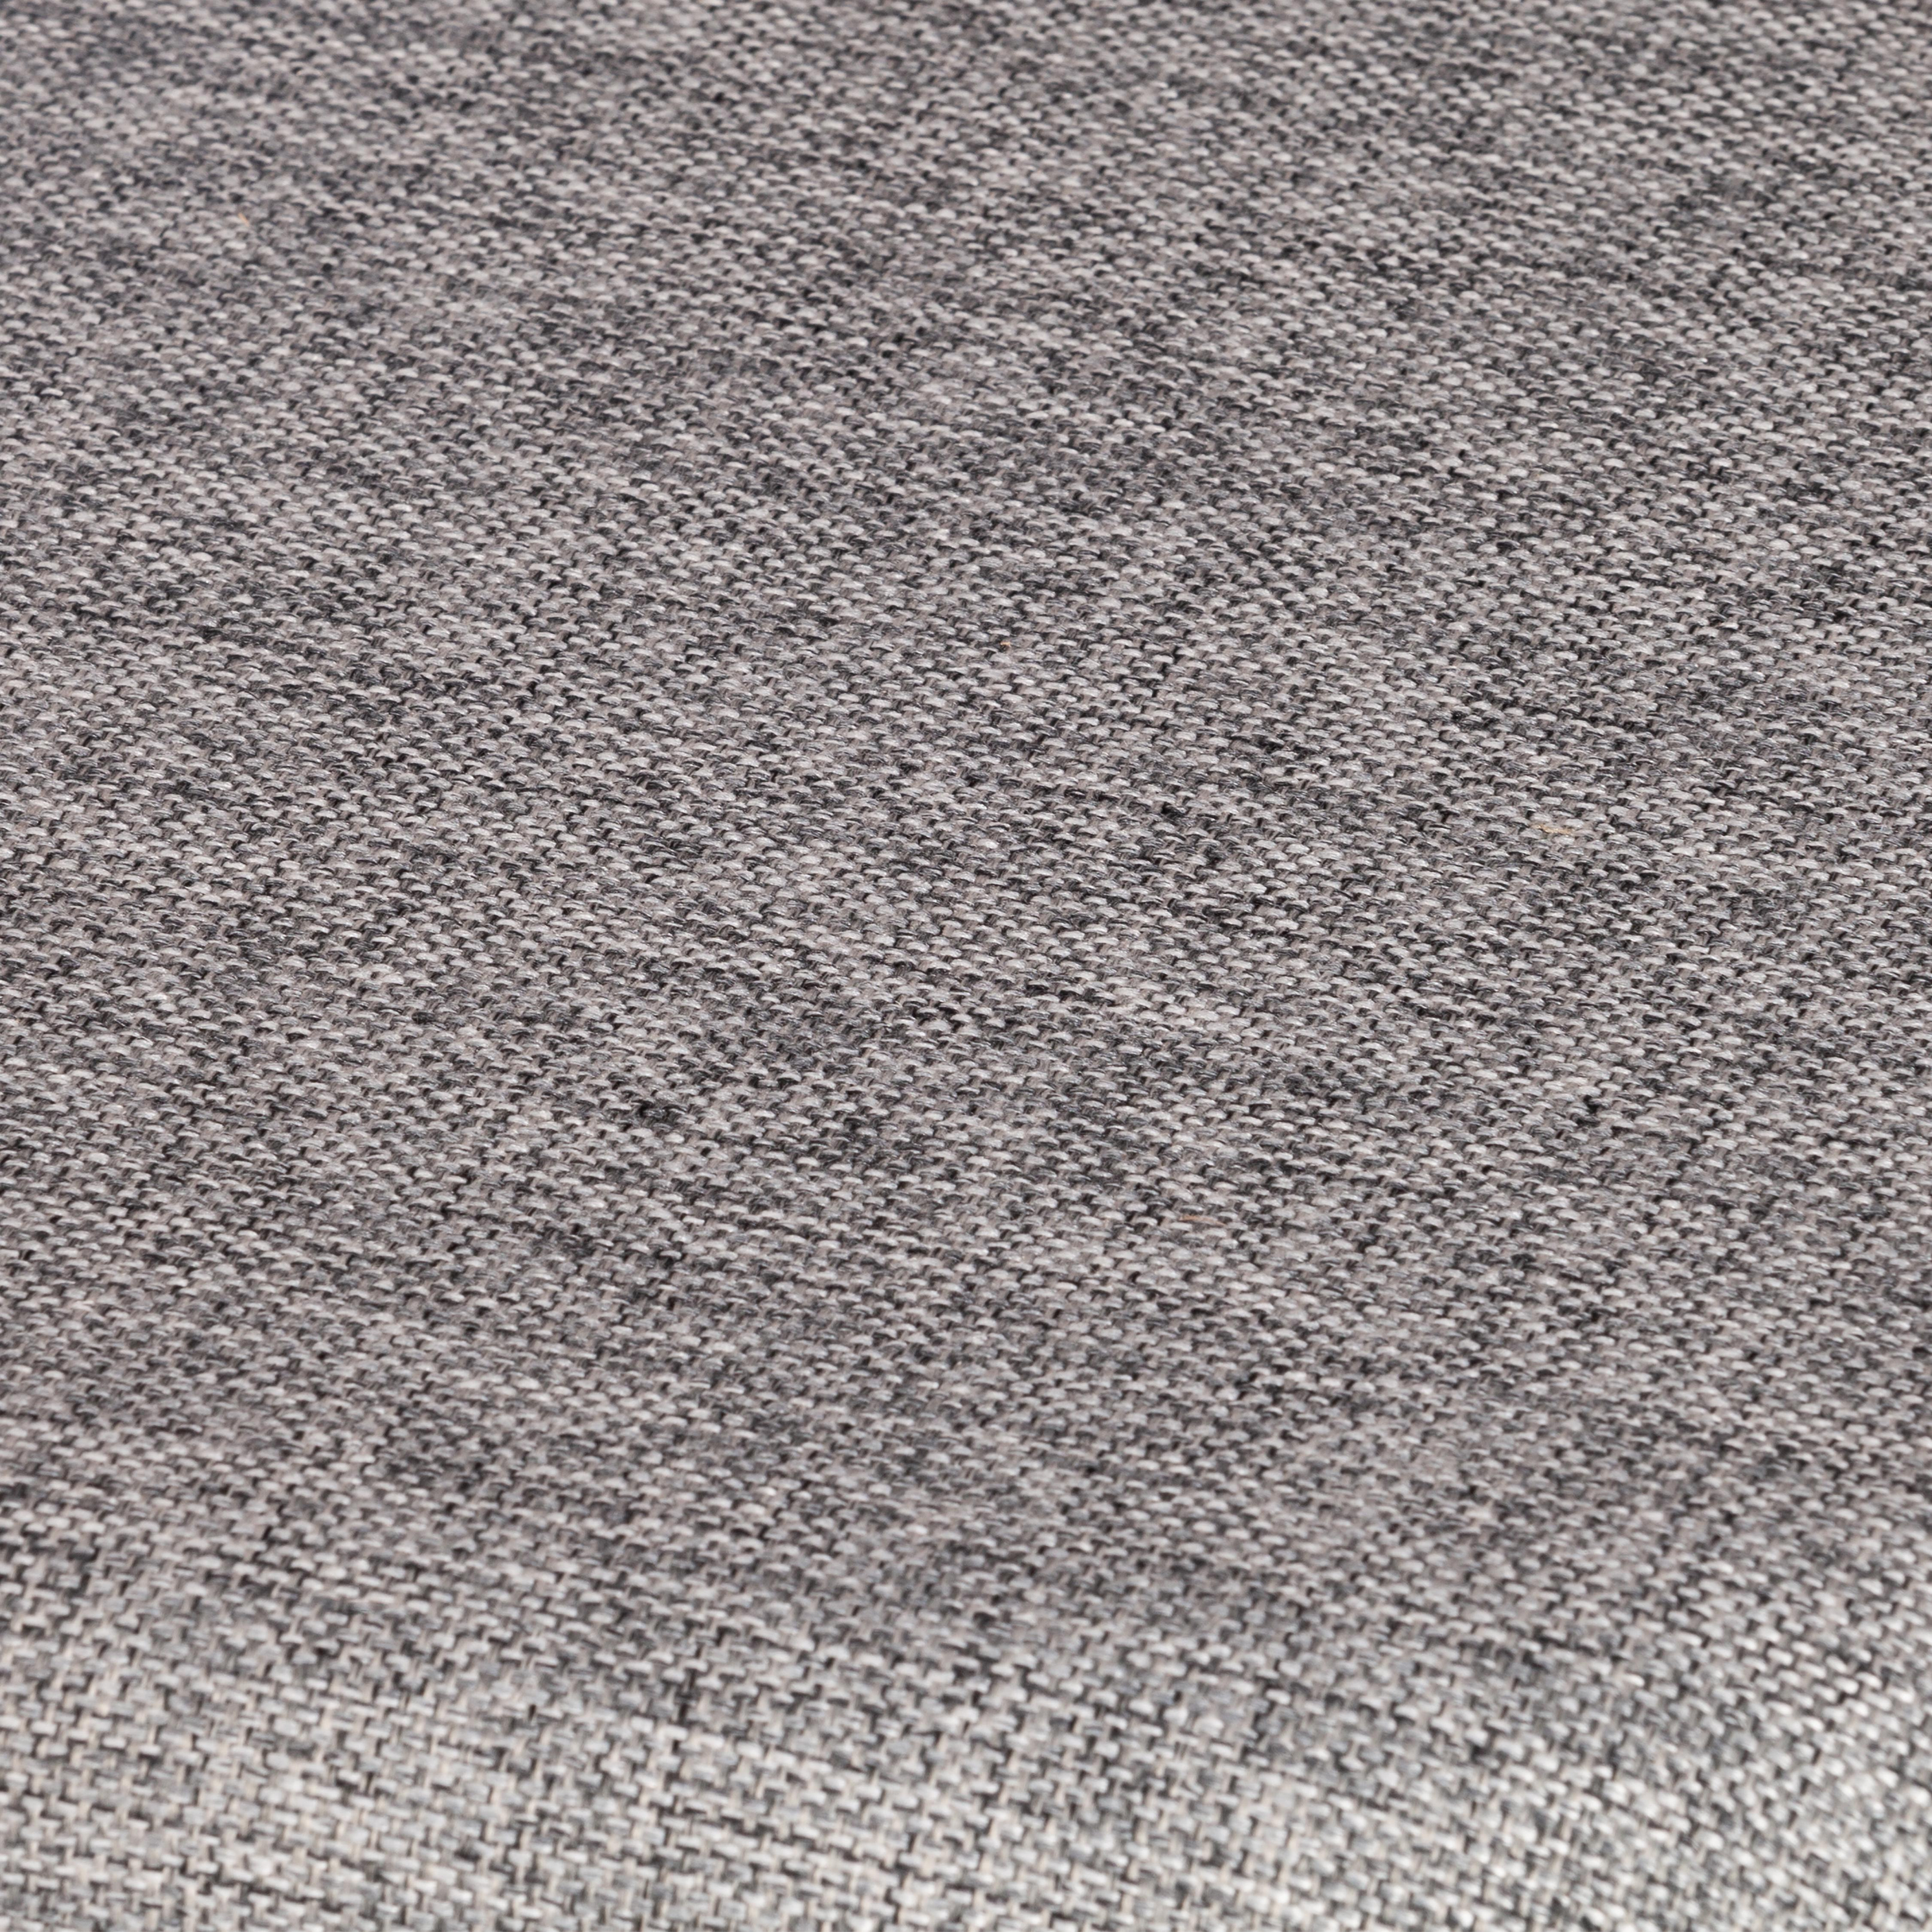 Стул DIAMANTE мягкое сидение бук, 42x42x85см, коричневый, ткань wool dimgrey, серый